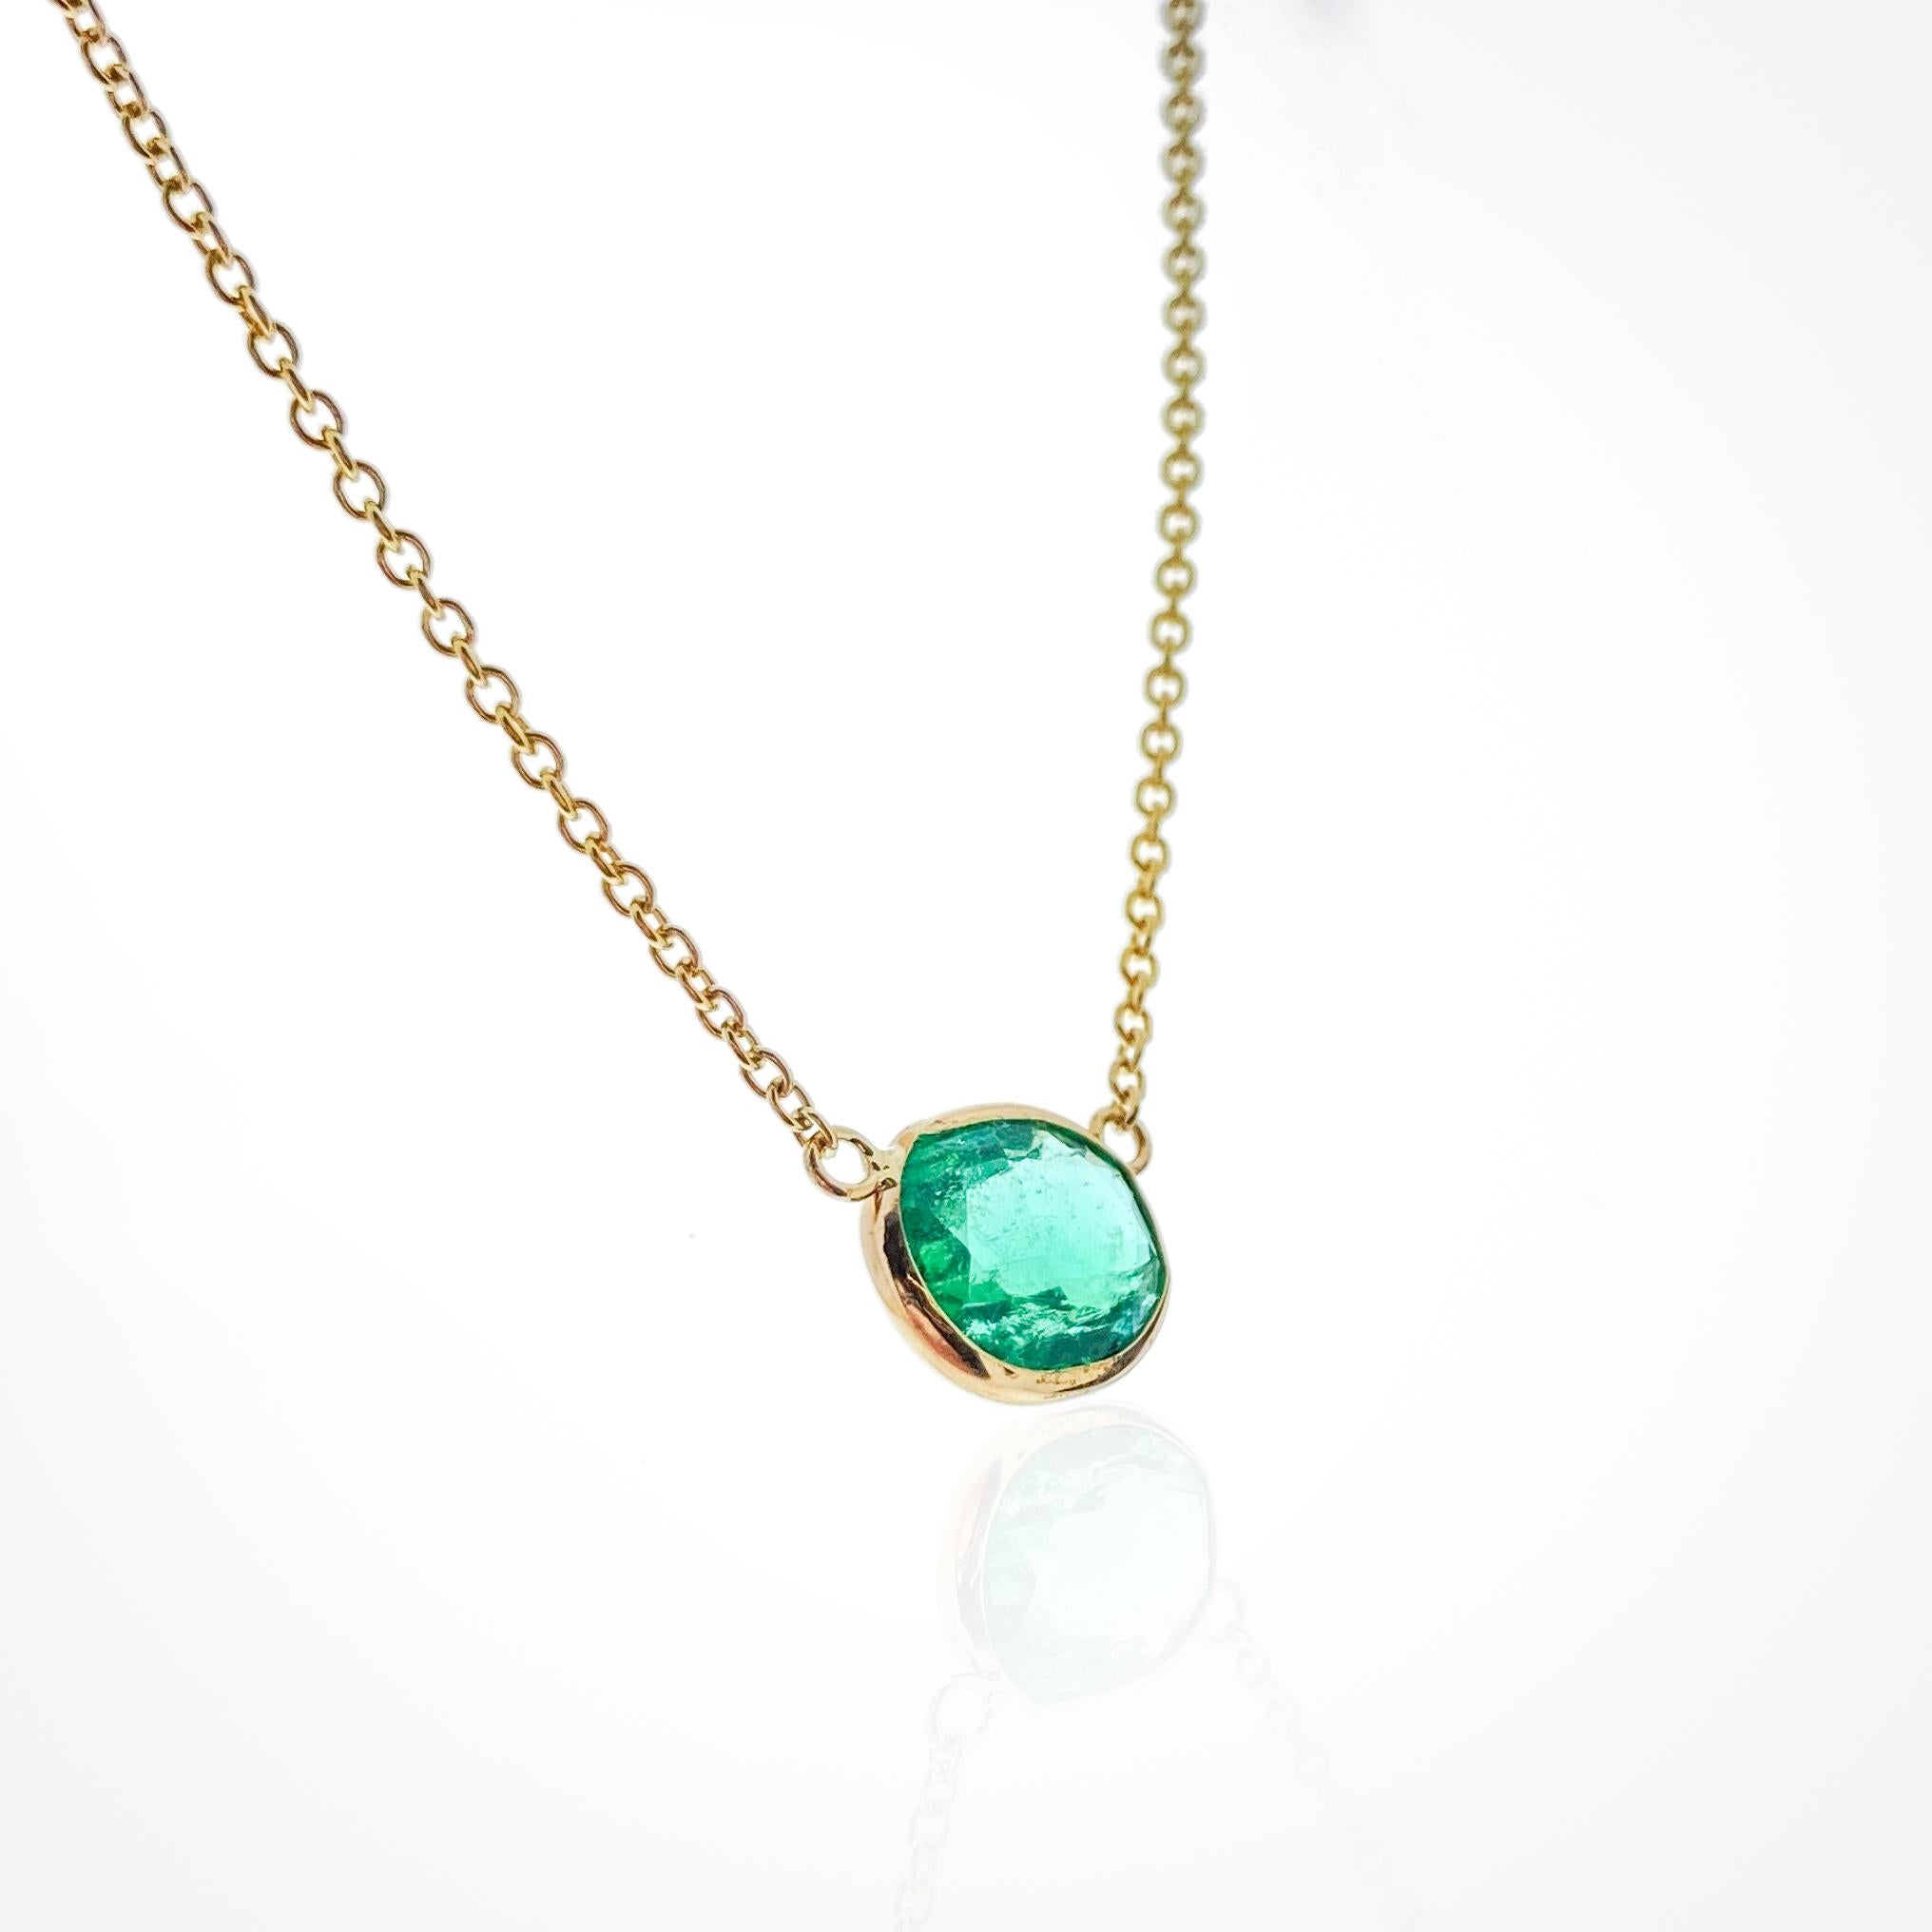 Dieses Collier enthält einen grünen Smaragd im Ovalschliff mit einem Gewicht von 1,67 Karat, gefasst in 14 Karat Gelbgold (YG). Smaragde werden wegen ihrer leuchtend grünen Farbe sehr geschätzt, und der ovale Schliff ist eine klassische Wahl für